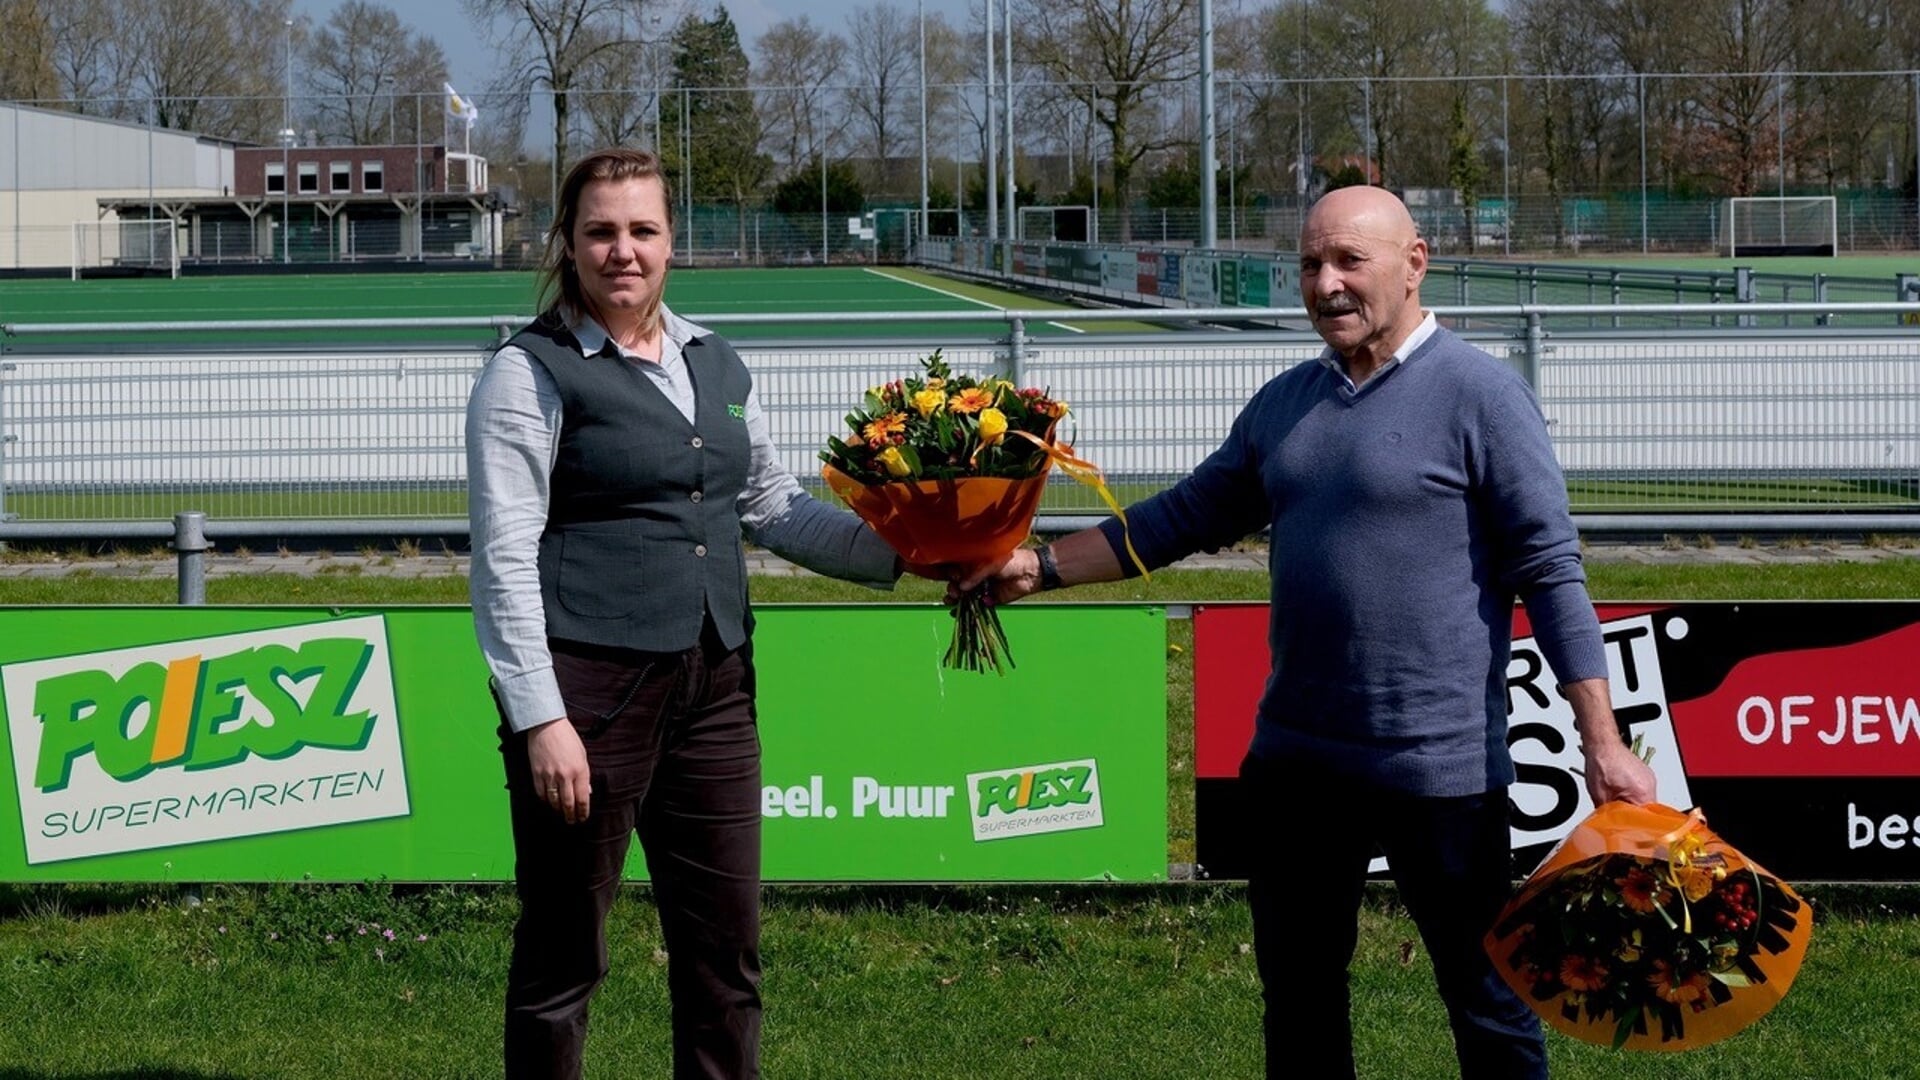 Danielle Wesenhagen, Poiesz-vestigingsmanager in Zuidbroek, bekrachtigt de nieuwe overeenkomst met Kwiek-voorzitter Willem Waals met een fleurig boeket.